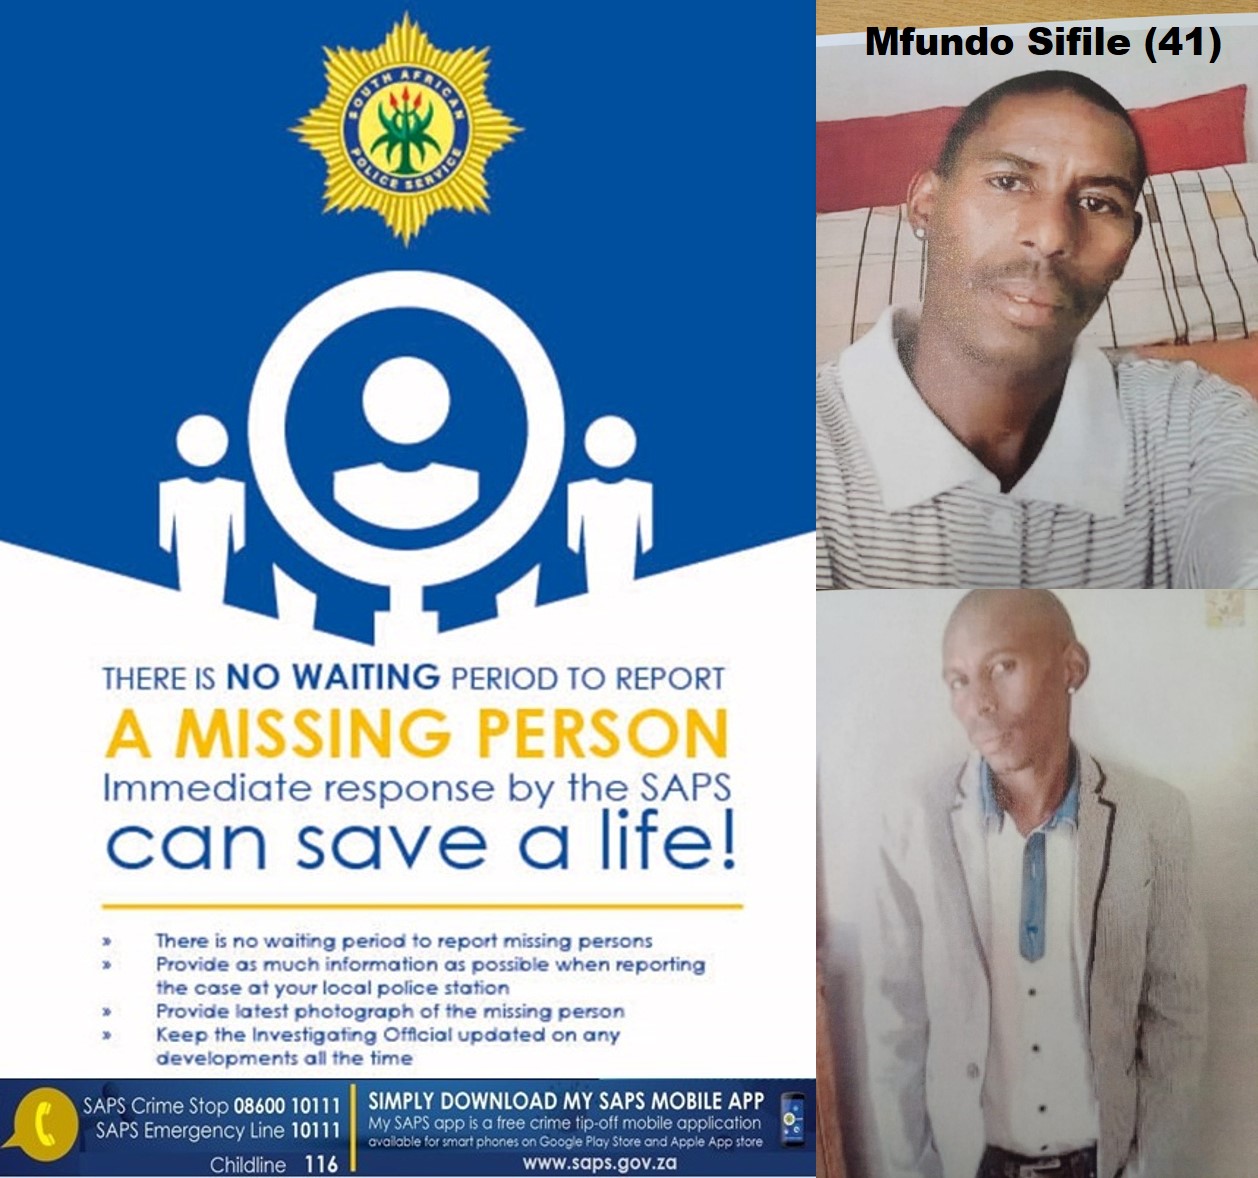 Police seek missing person